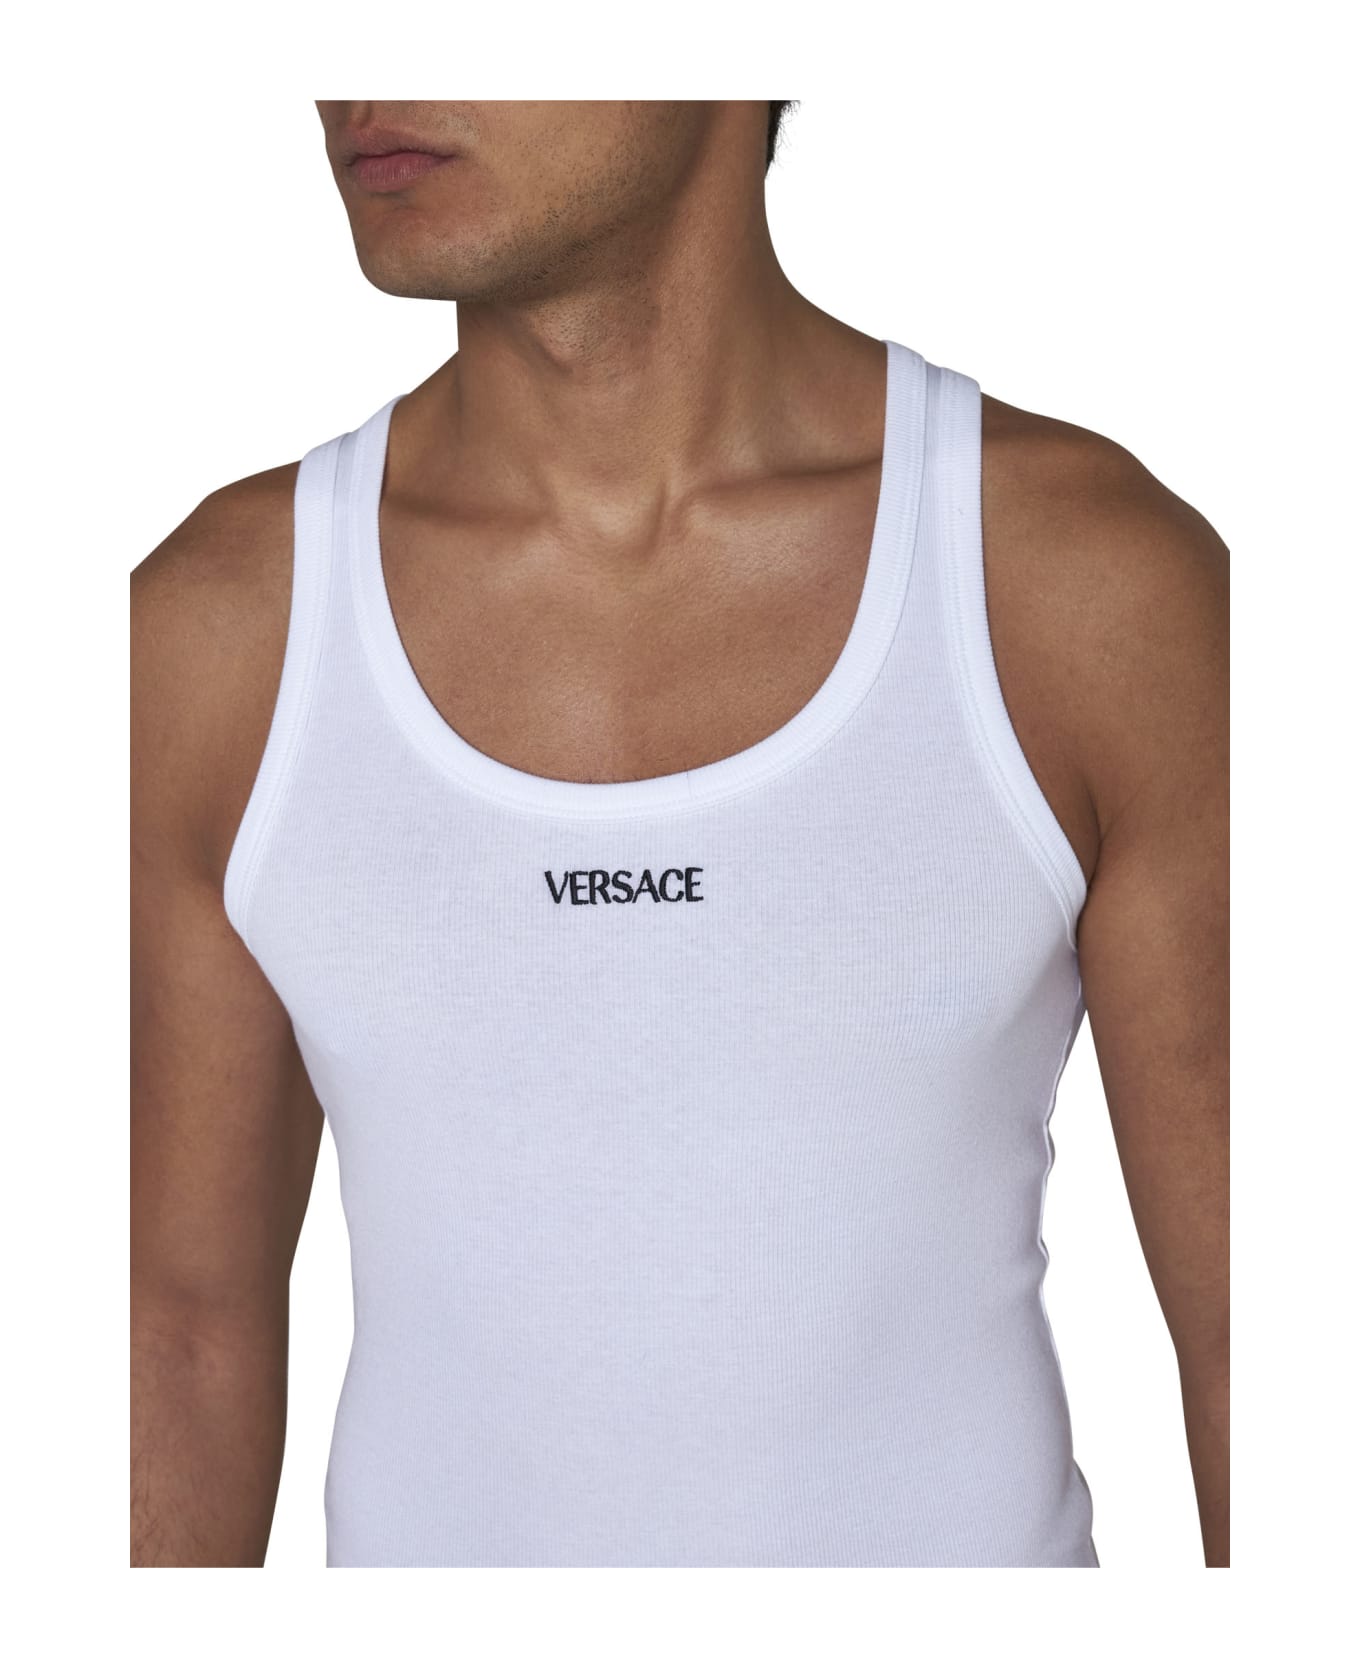 Versace Underwear - Optical white